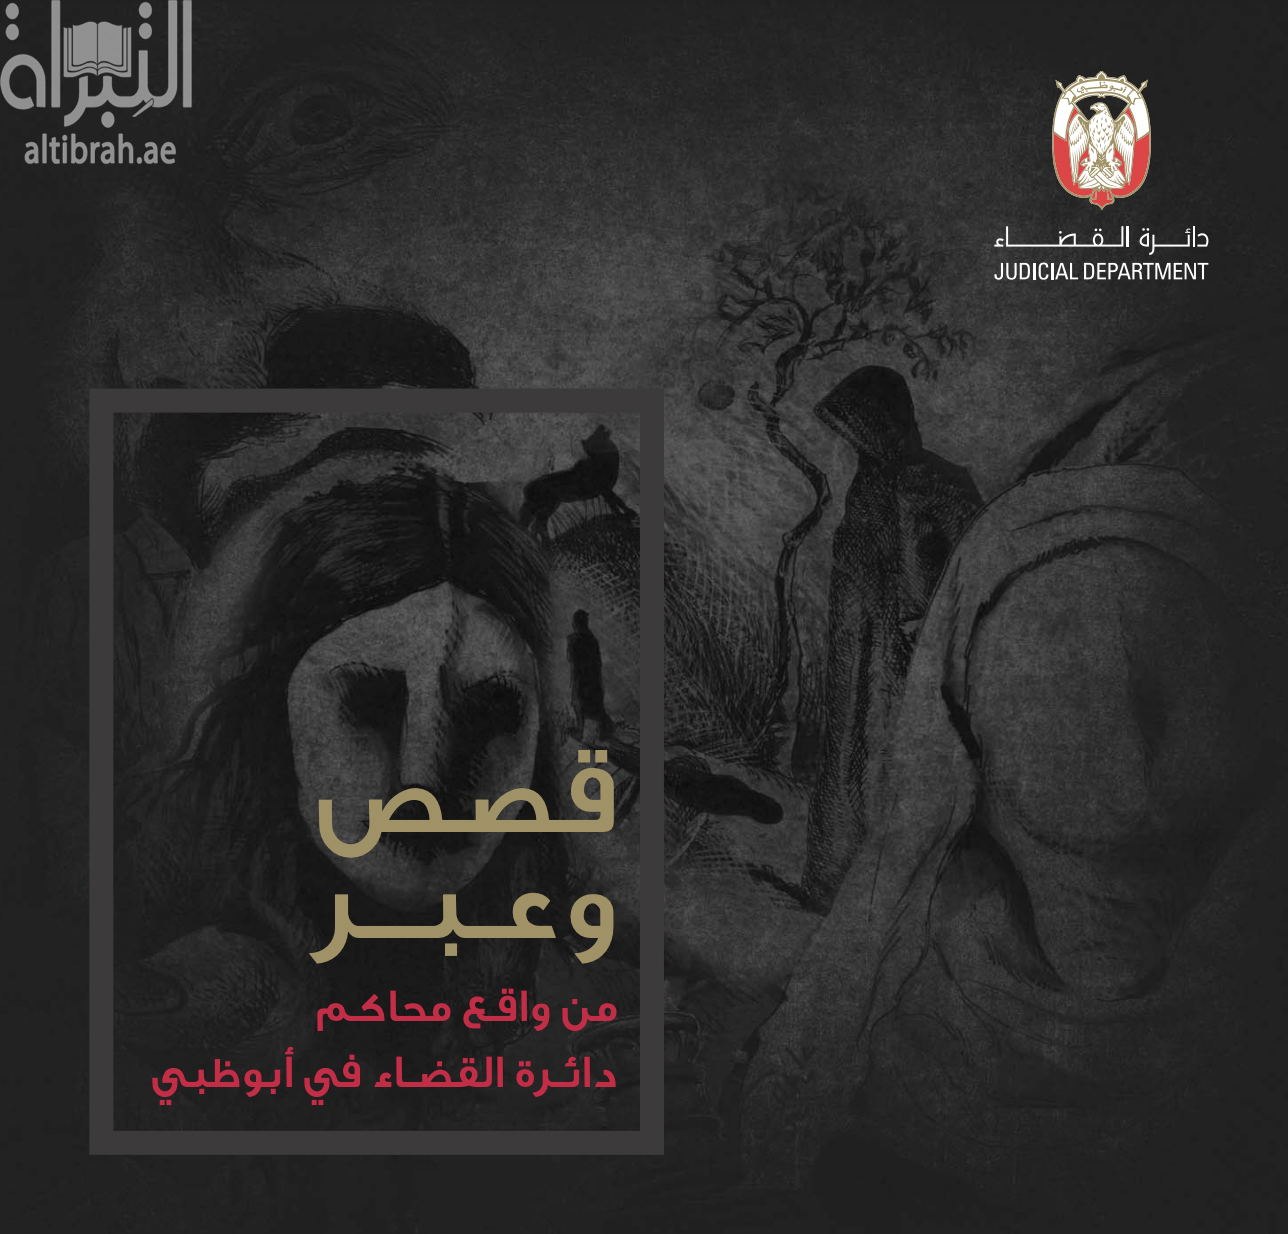 كتاب قصص وعبر من واقع محاكم دائرة القضاء في أبوظبي - الجزء الأول